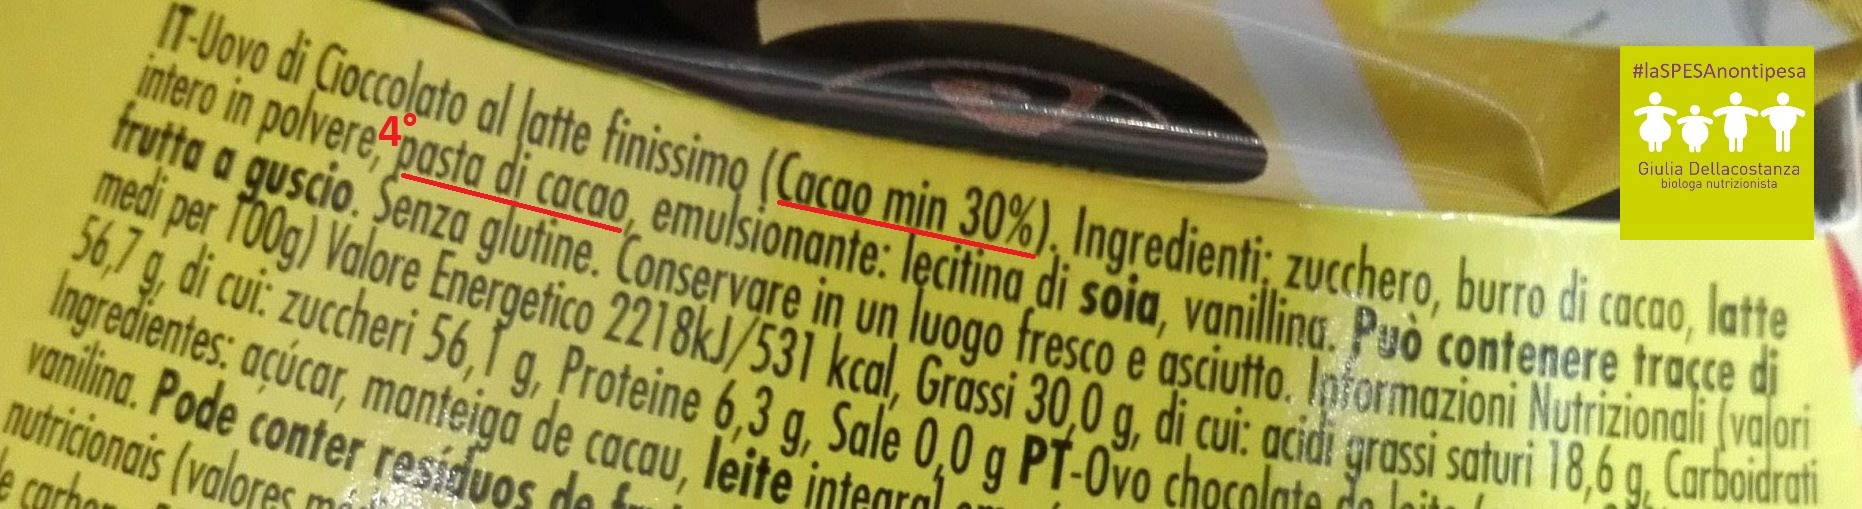 Etichetta ingredienti Uovo di Pasqua Dolfin